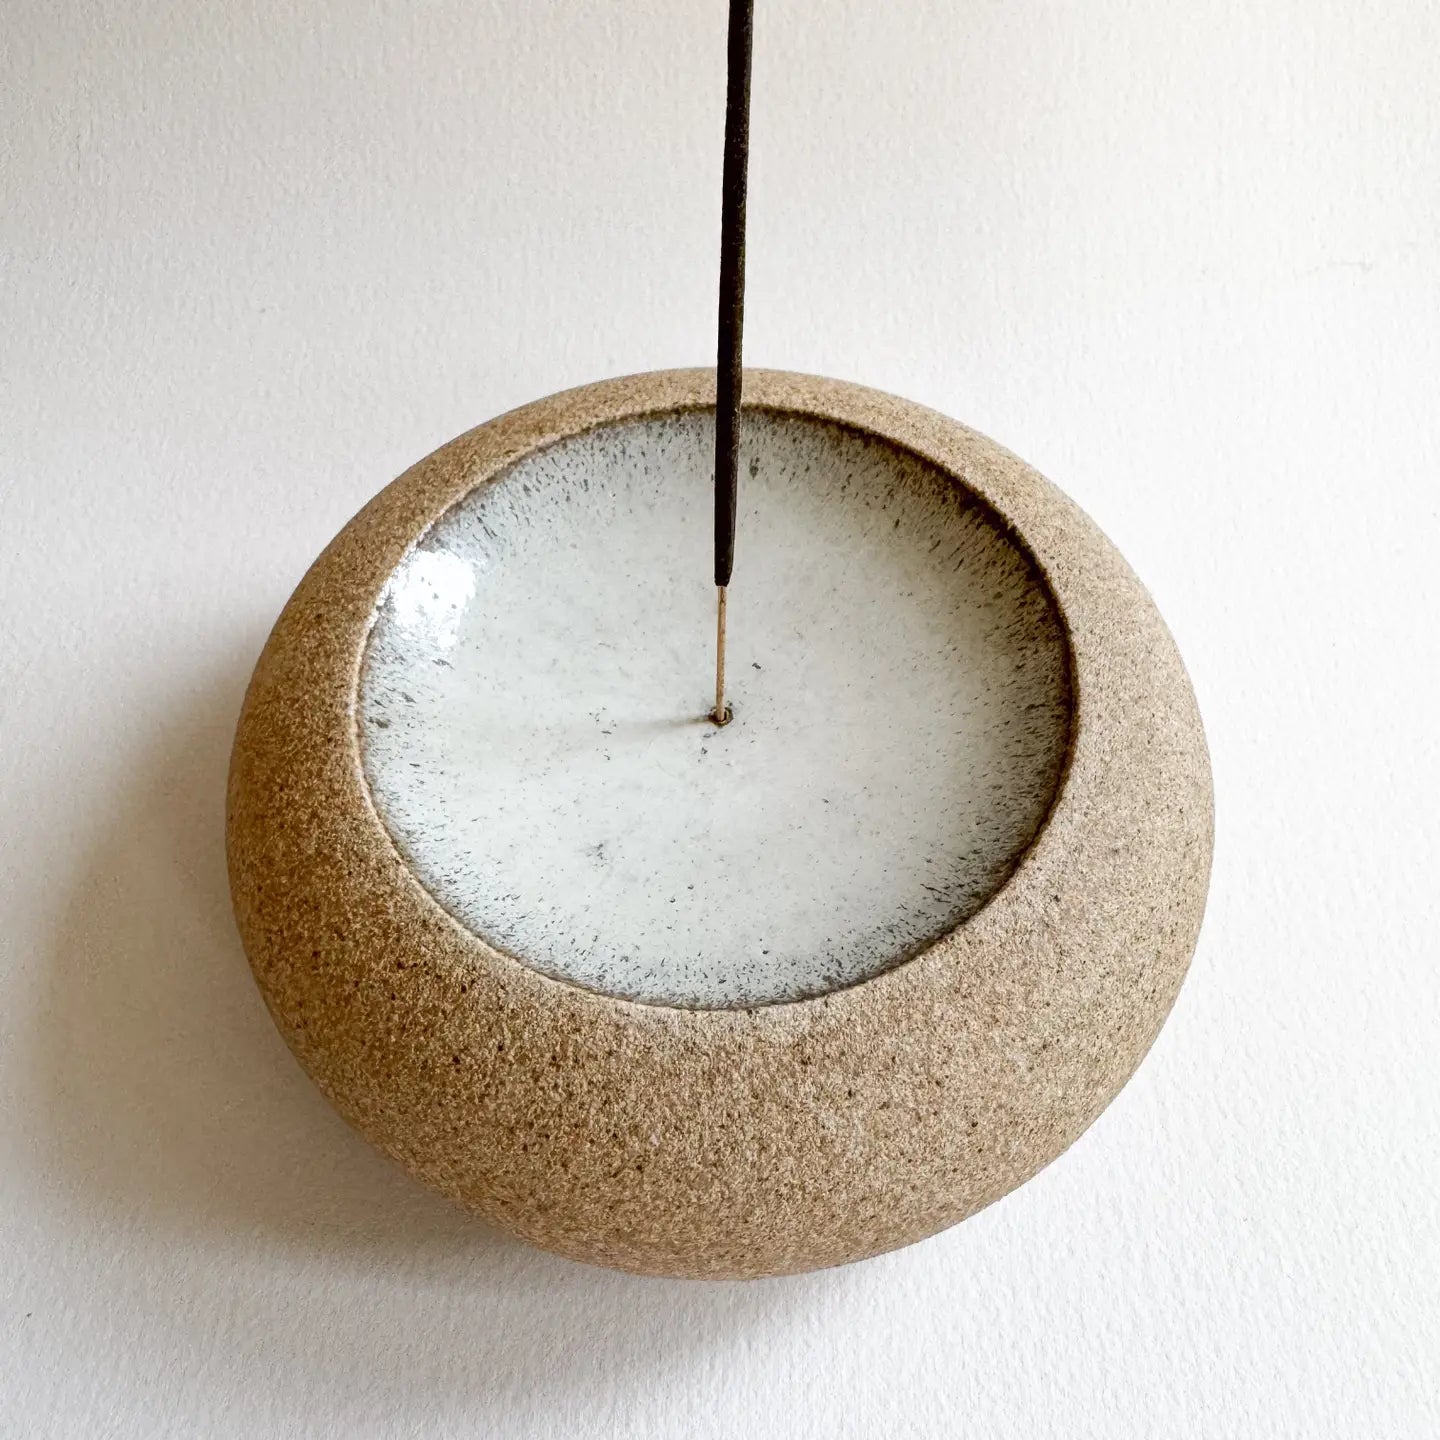 SOMBRA / sandstone incense holder 016